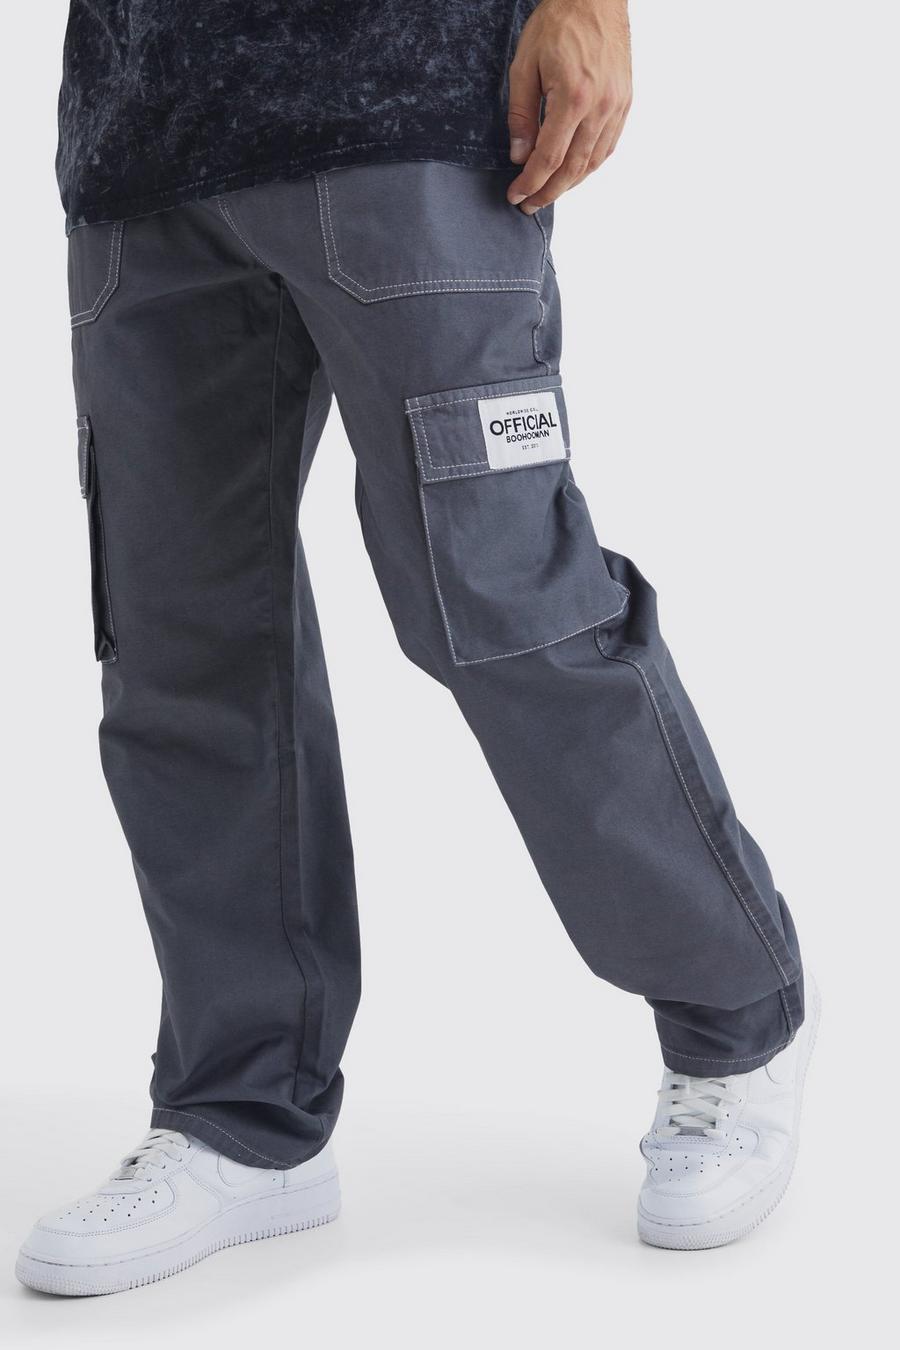 Pantalón cargo holgado con costuras en contraste y etiqueta de tela, Charcoal